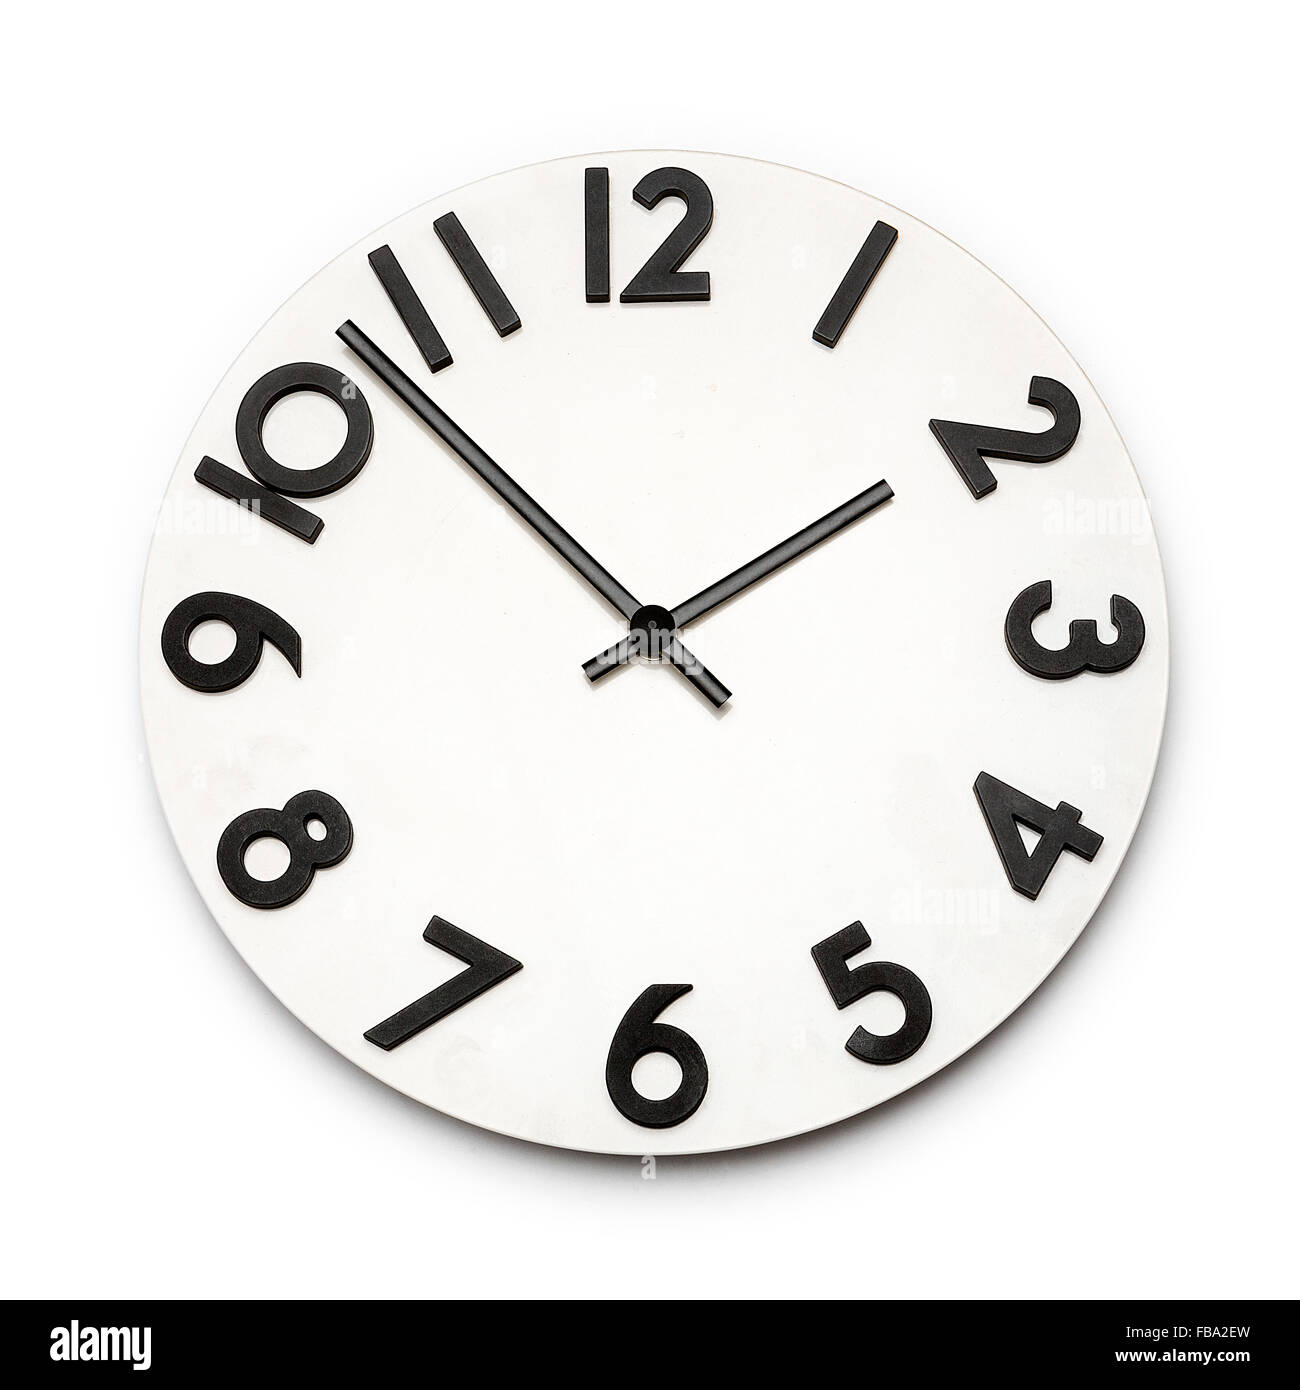 Horloge blanc avec chiffres noirs isolé sur fond blanc Banque D'Images